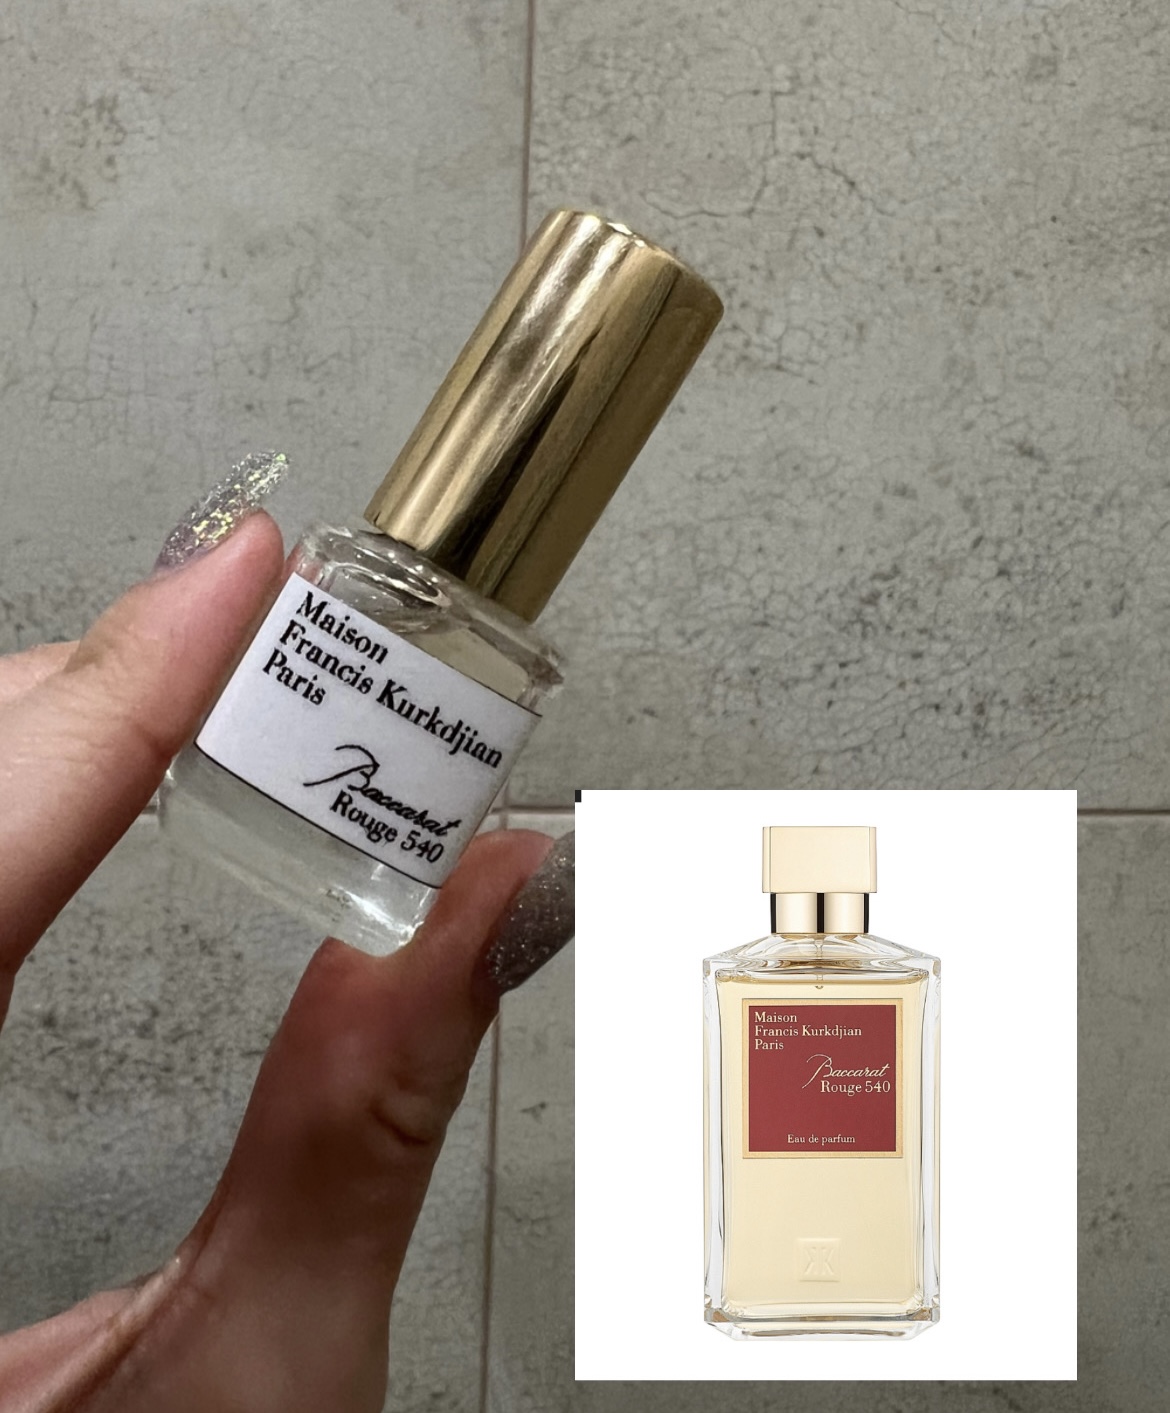 Її величність Баккара і відмінність між версіями парфюм і екстракт